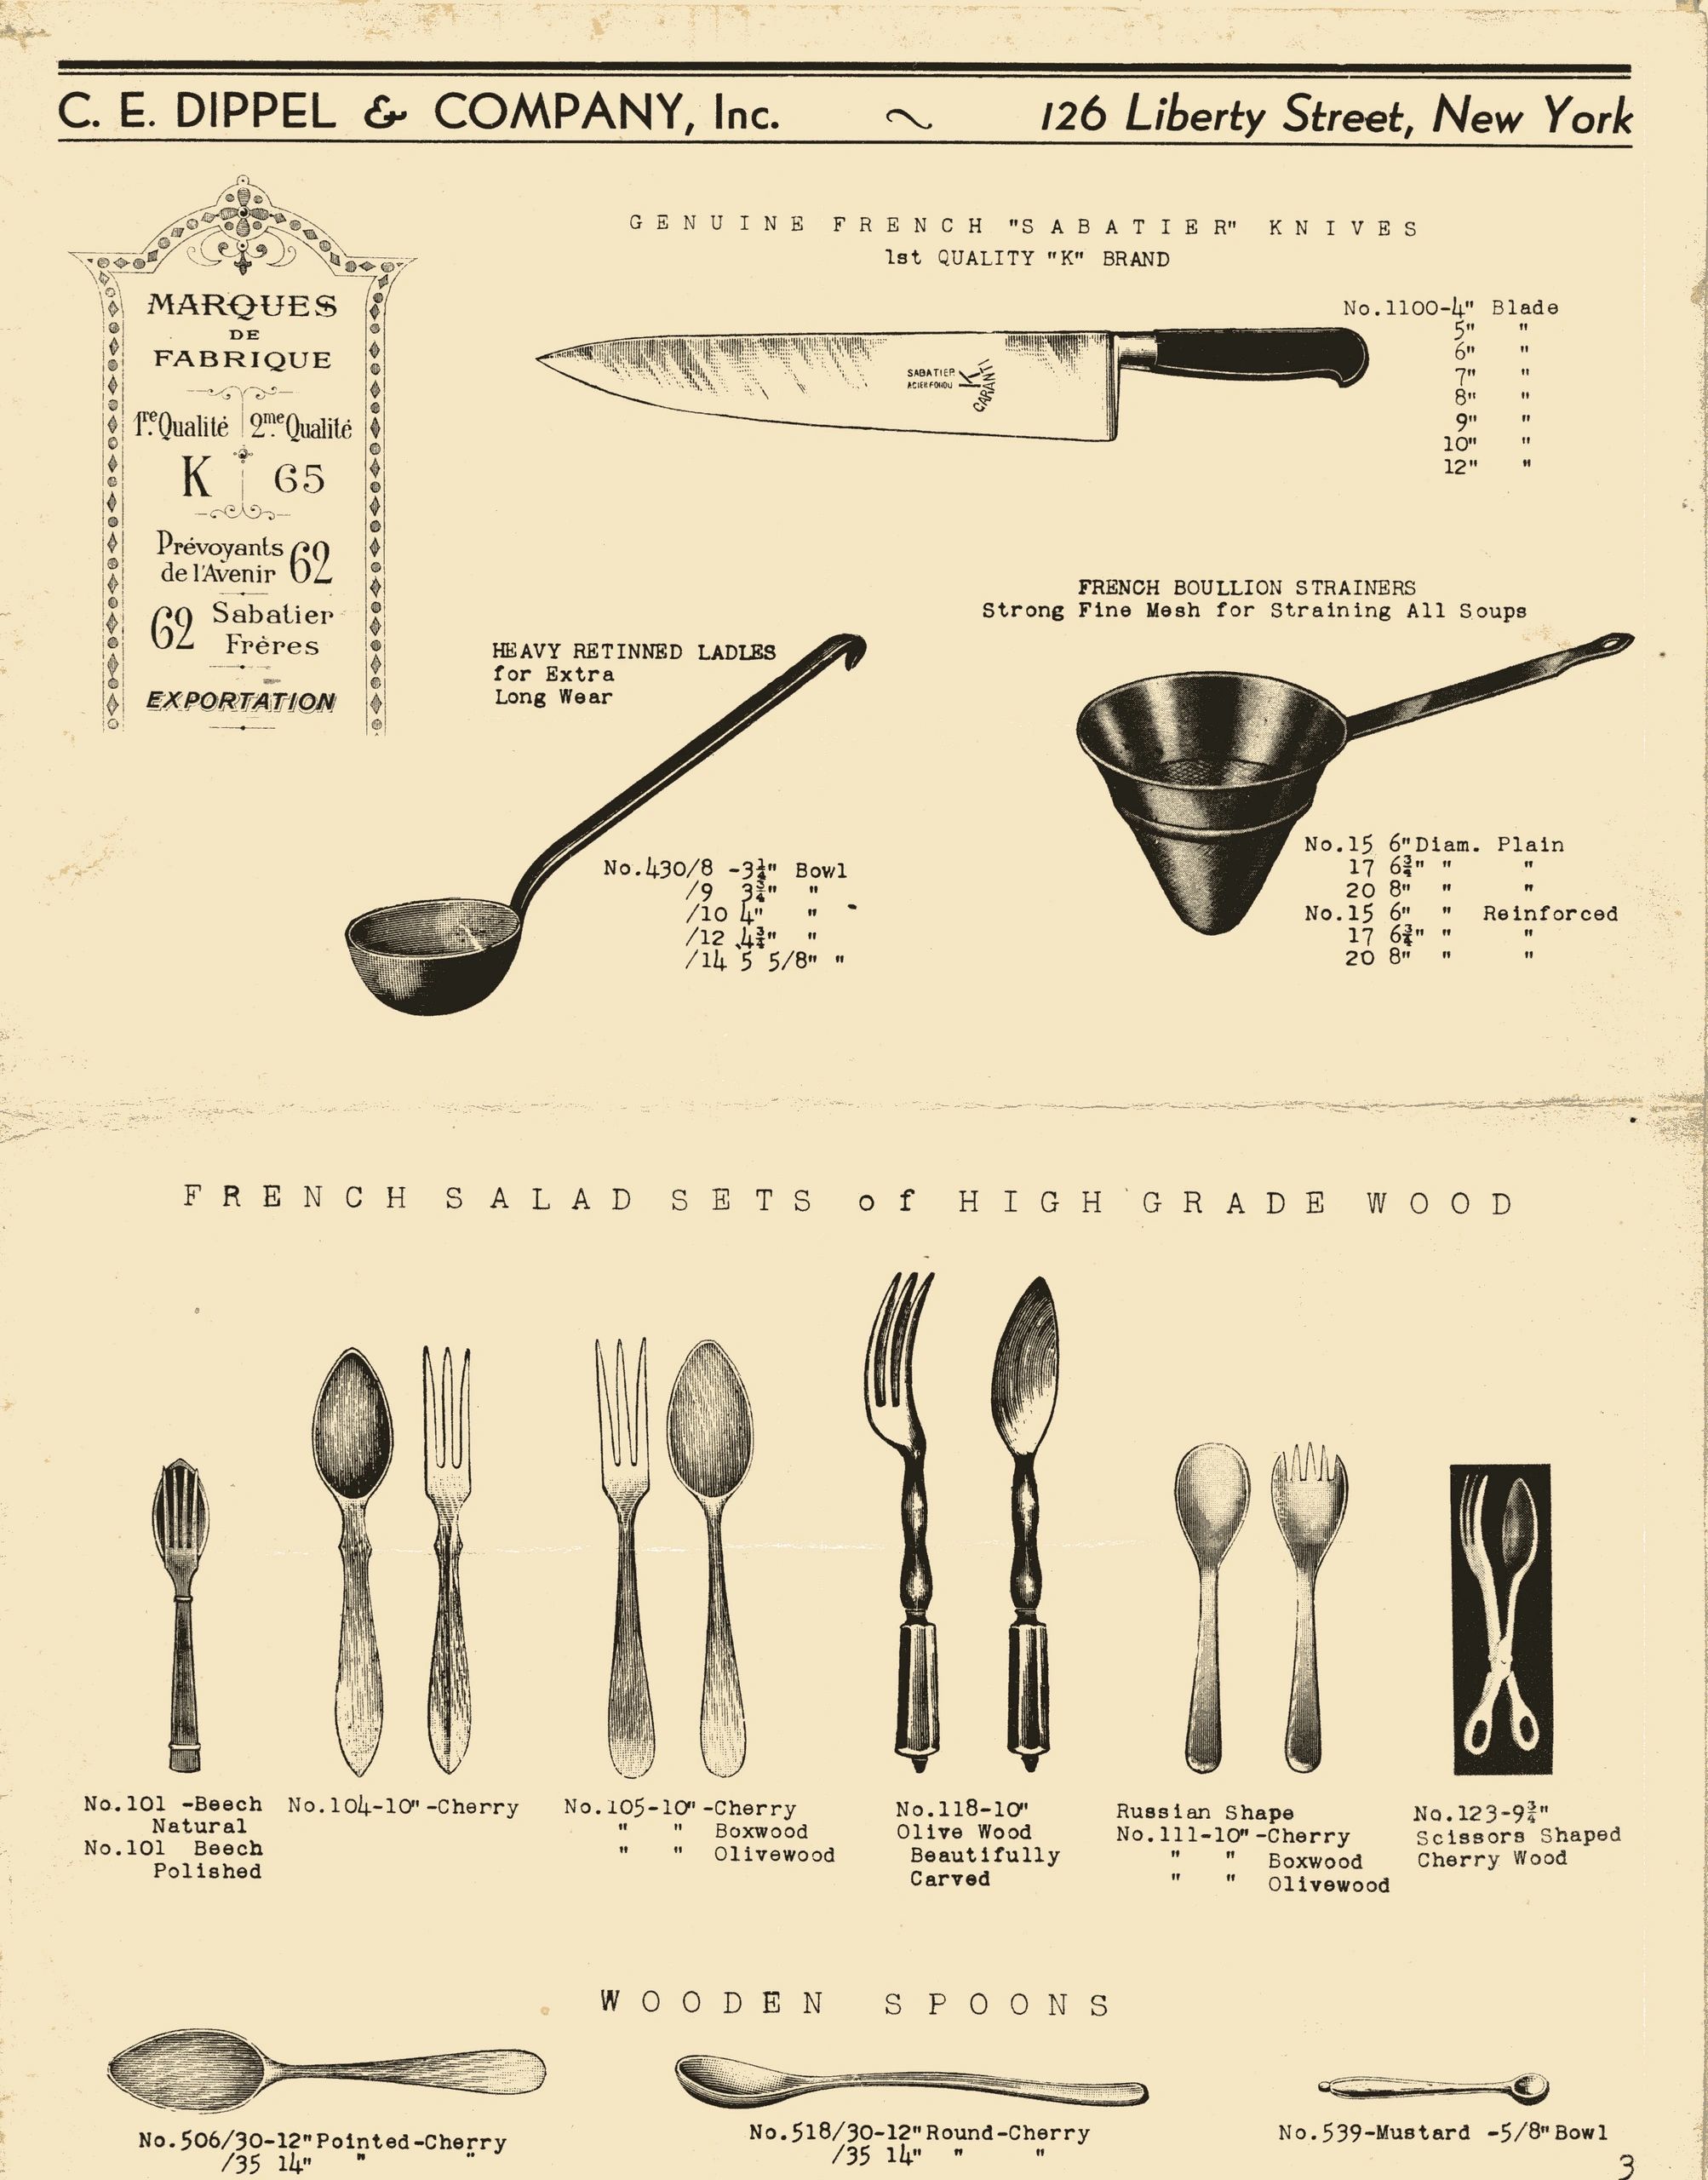 8 Inch Chef Knife (K-Sabatier 1834) - Best for All Food Prep